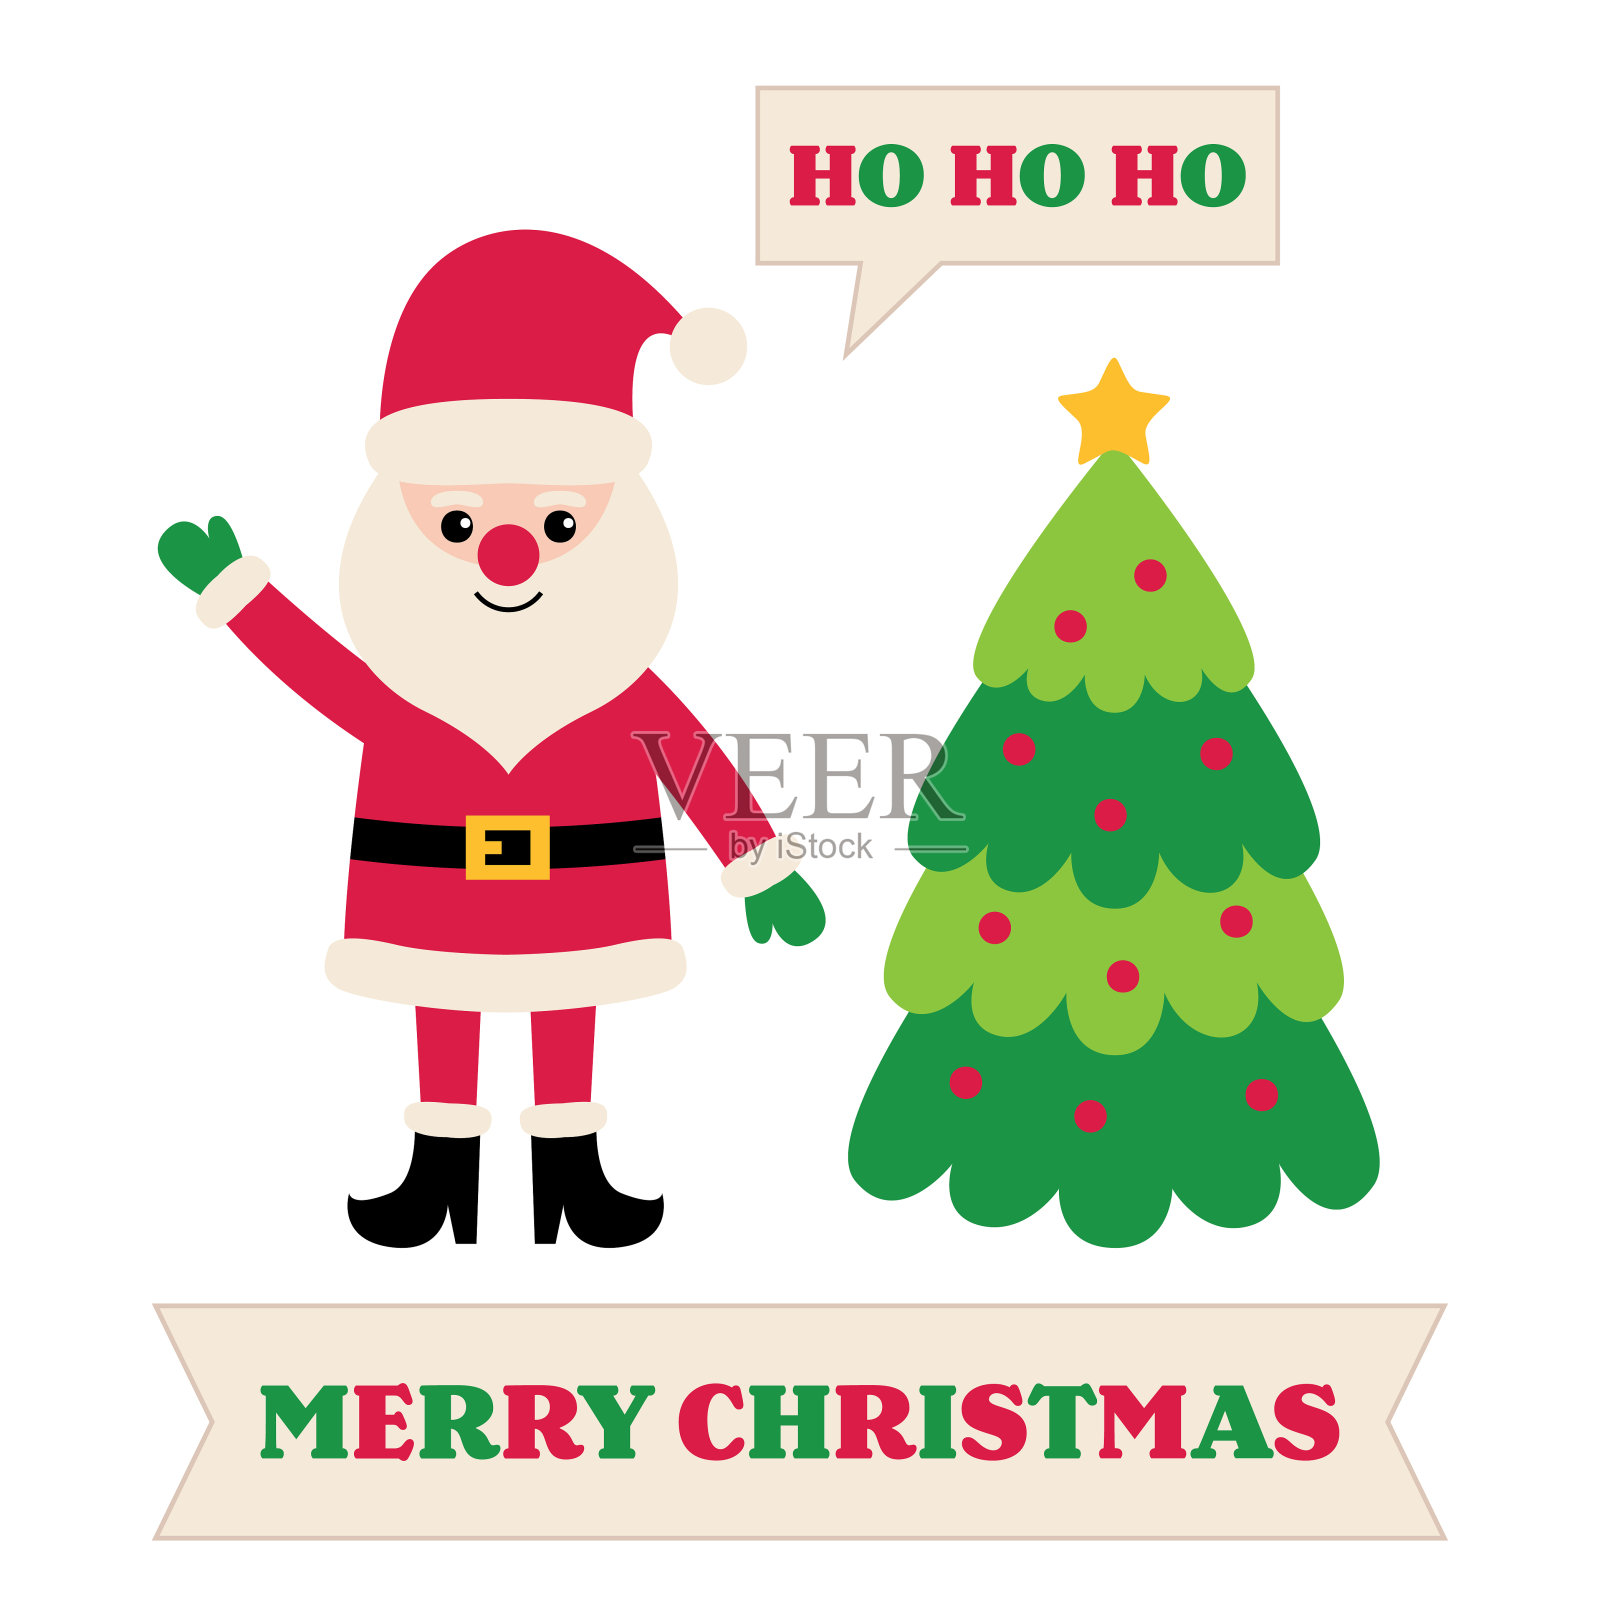 有圣诞老人和圣诞树的贺卡插画图片素材